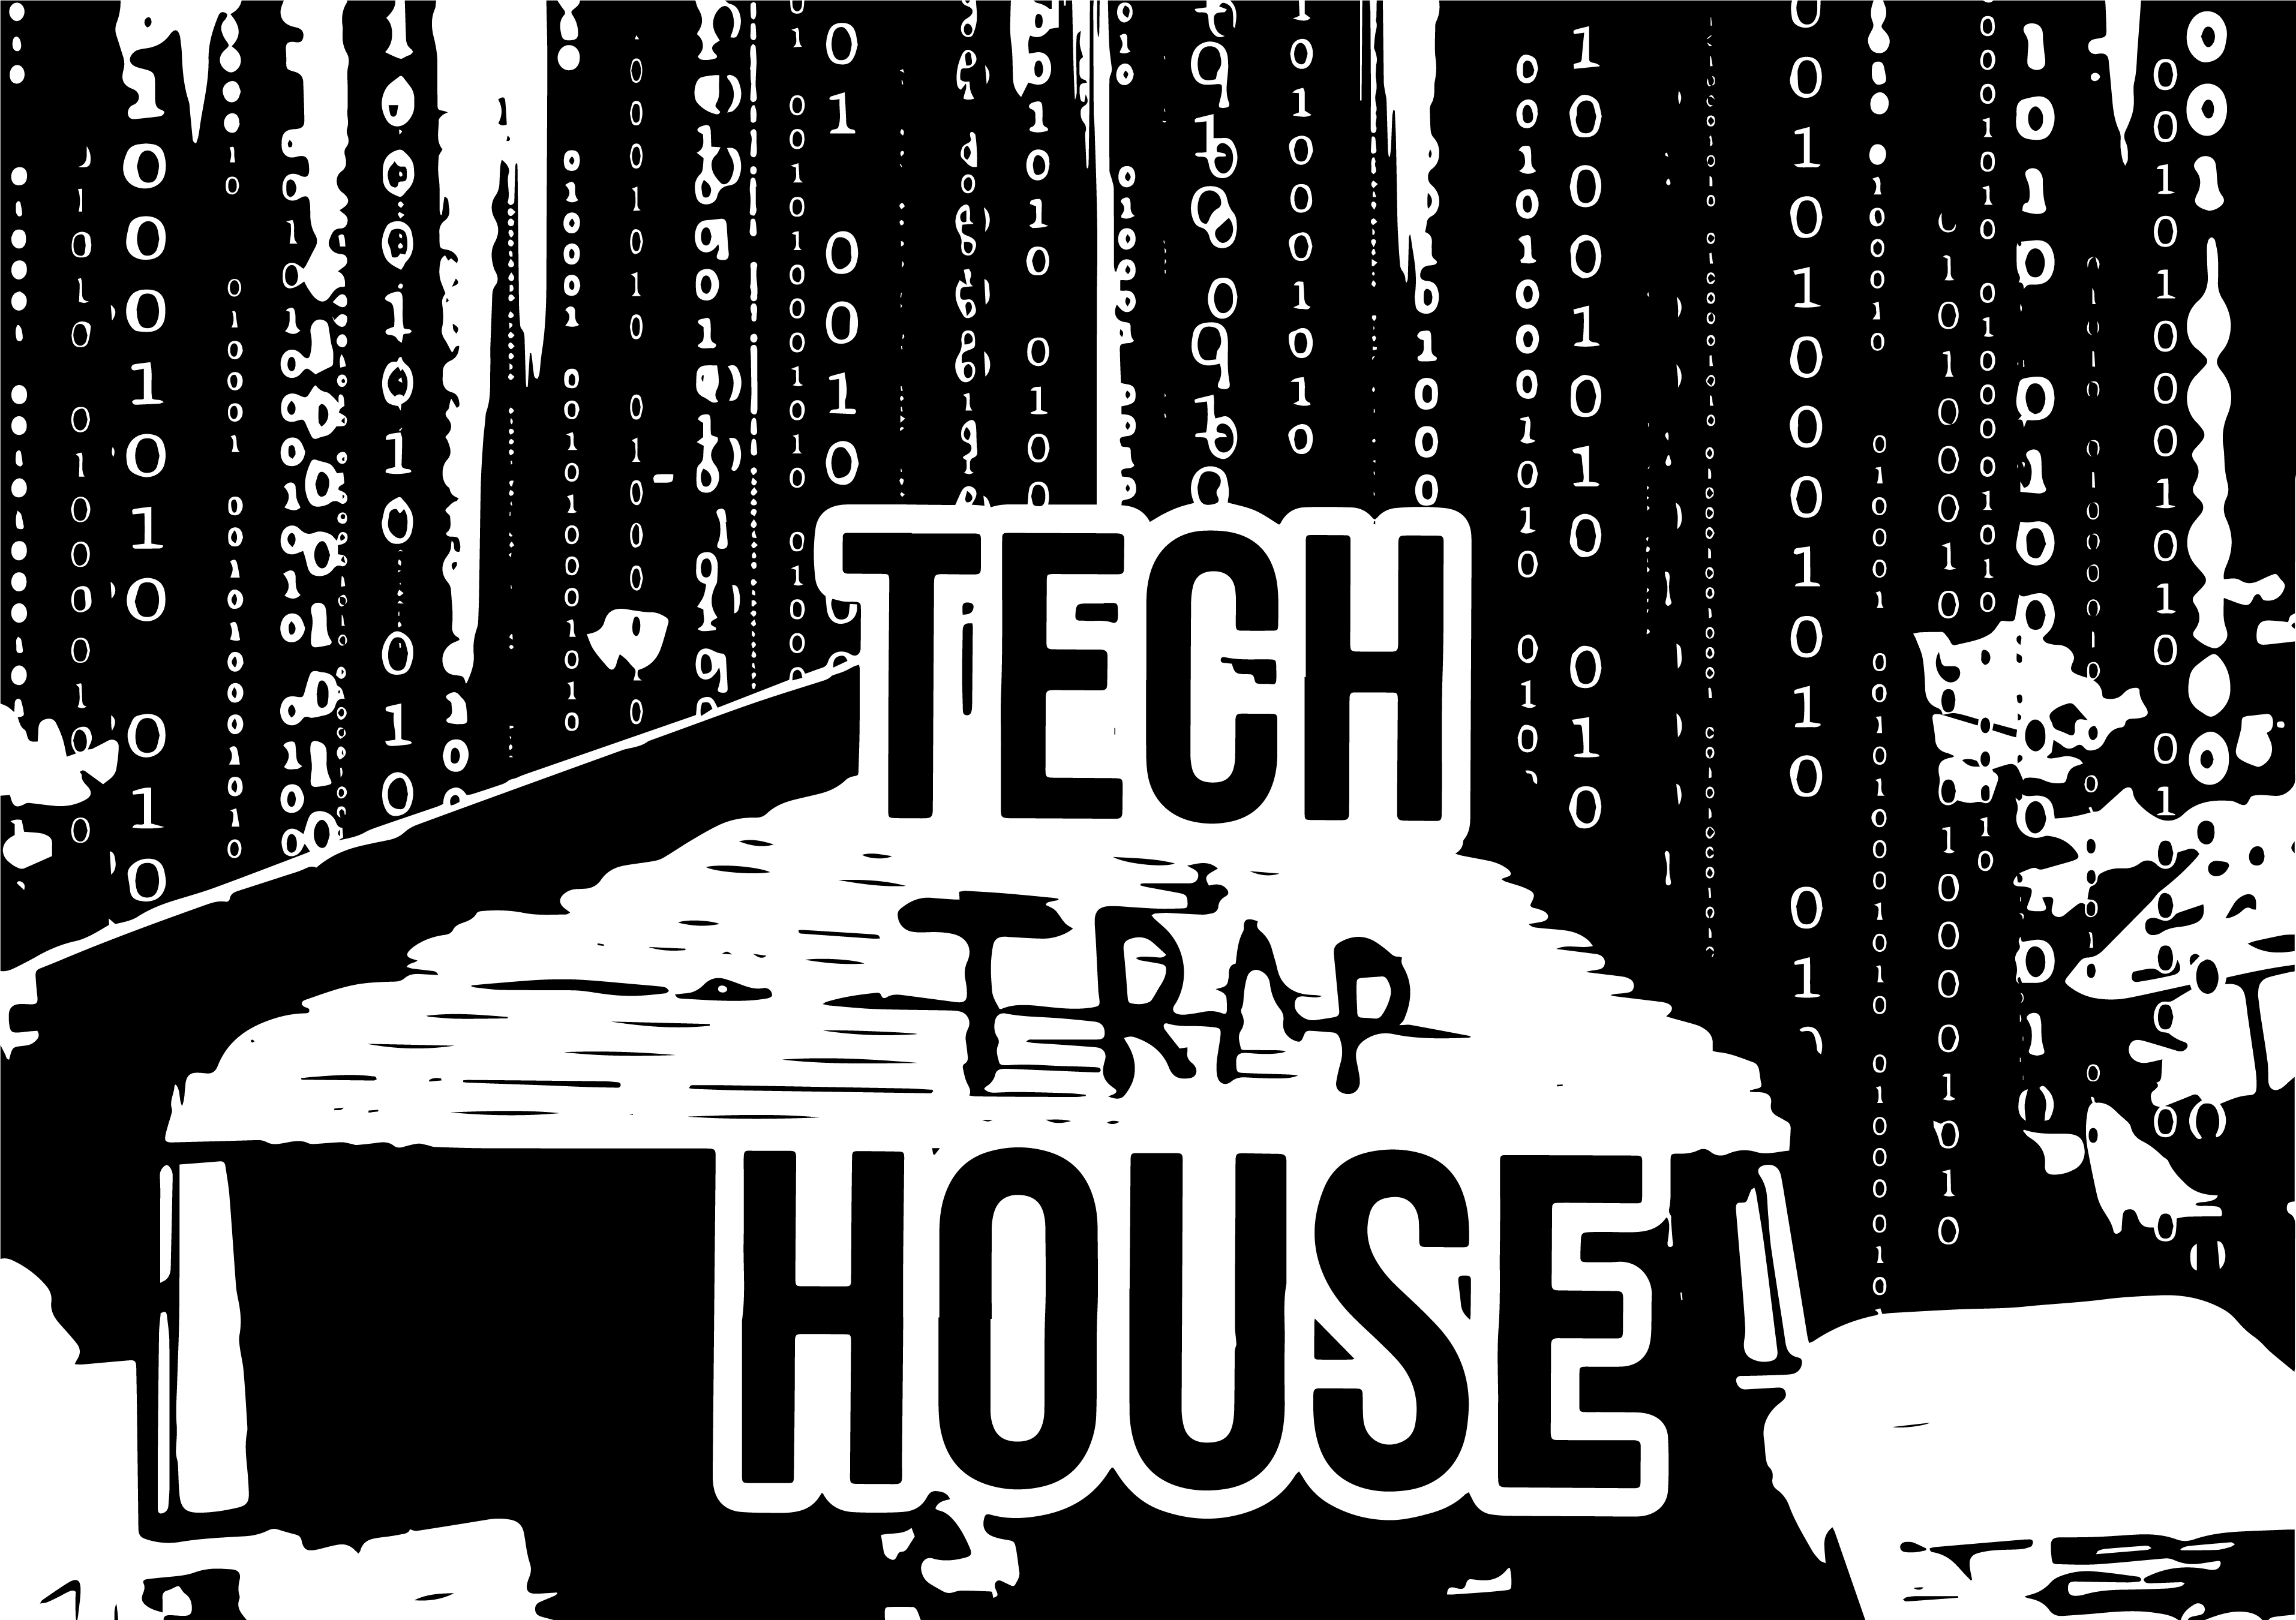 Tech Trap House